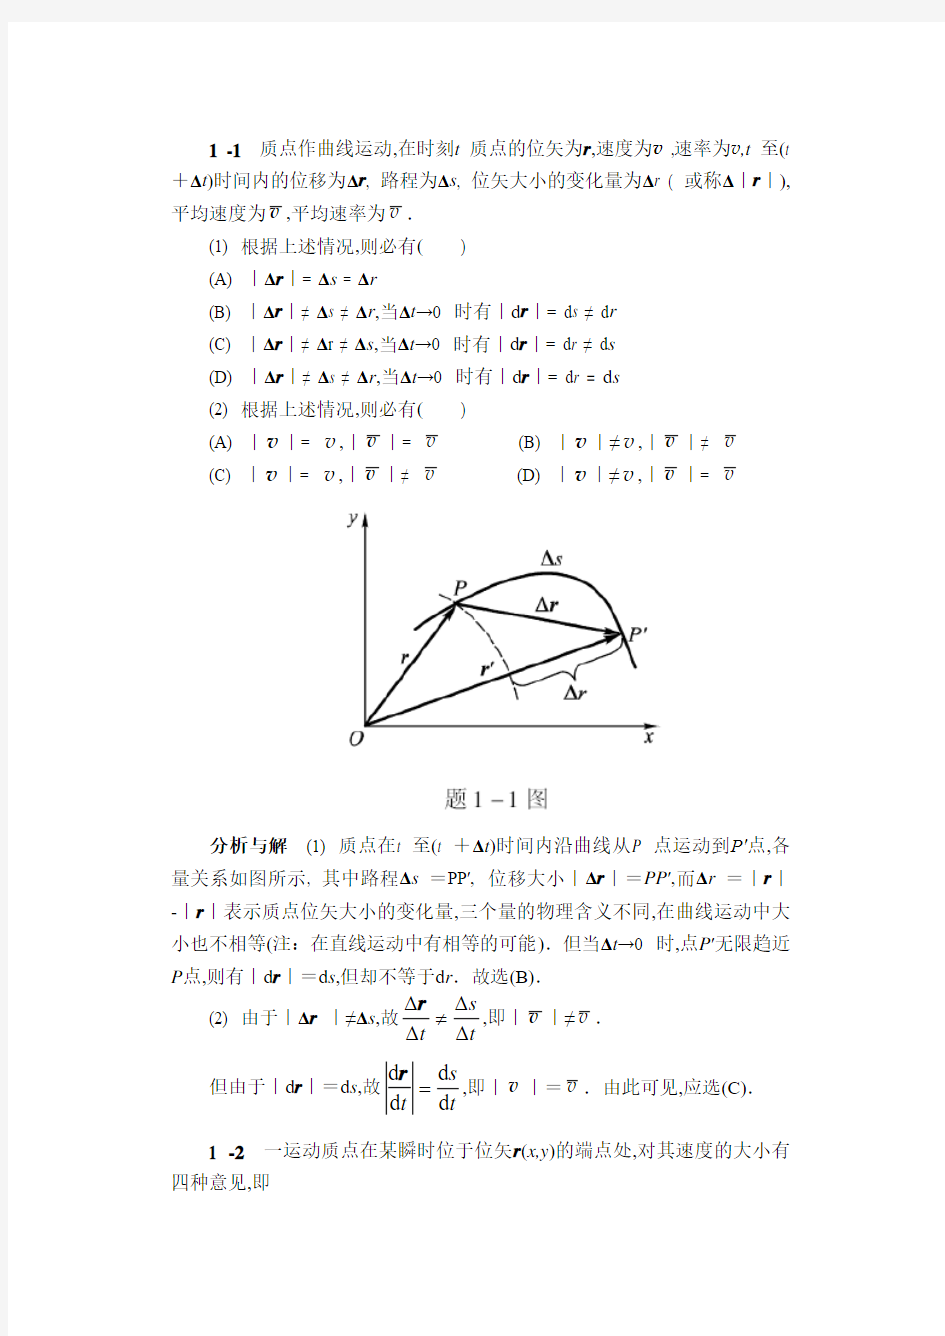 华南农业大学-物理学简明教程课后习题答案